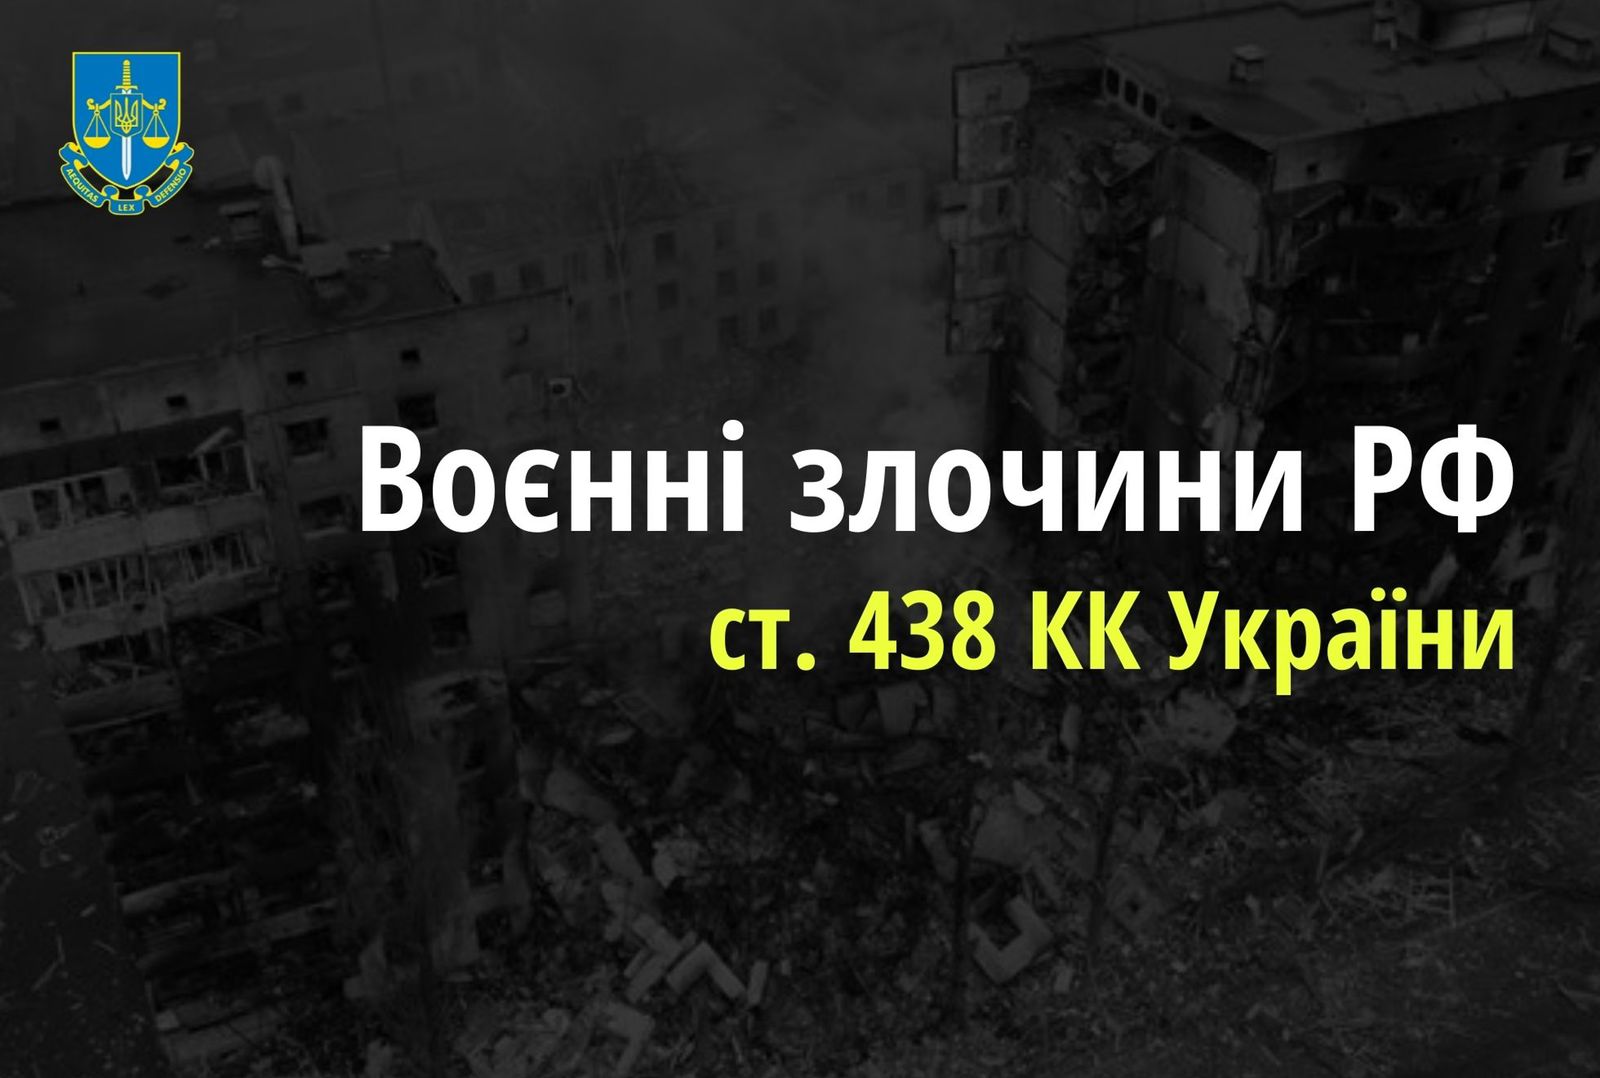 Обстріли населених пунктів Луганщини – розпочато провадження